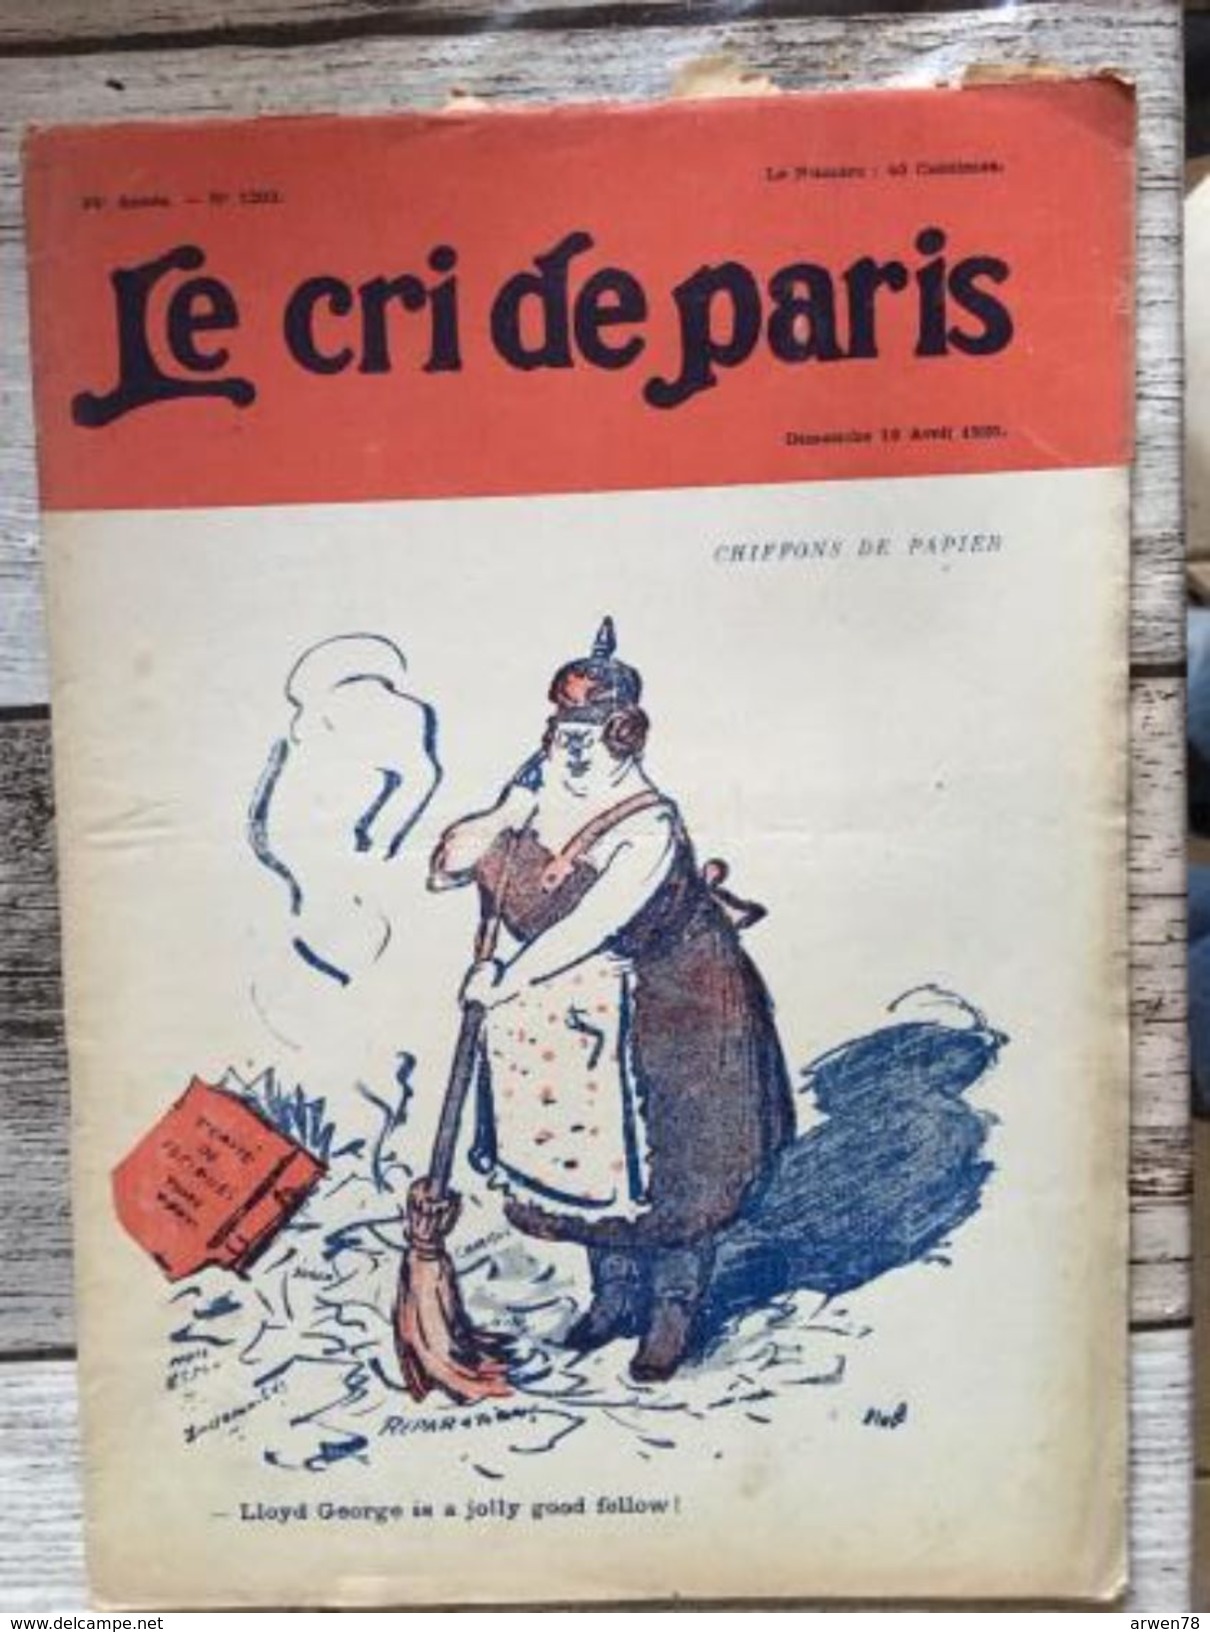 Le Cri De Paris Avril 1920 Chiffons De Papier Lloyd George Is A Jolly Good Fellow Reparations De Guerre Casque A Pointe - 1900 - 1949